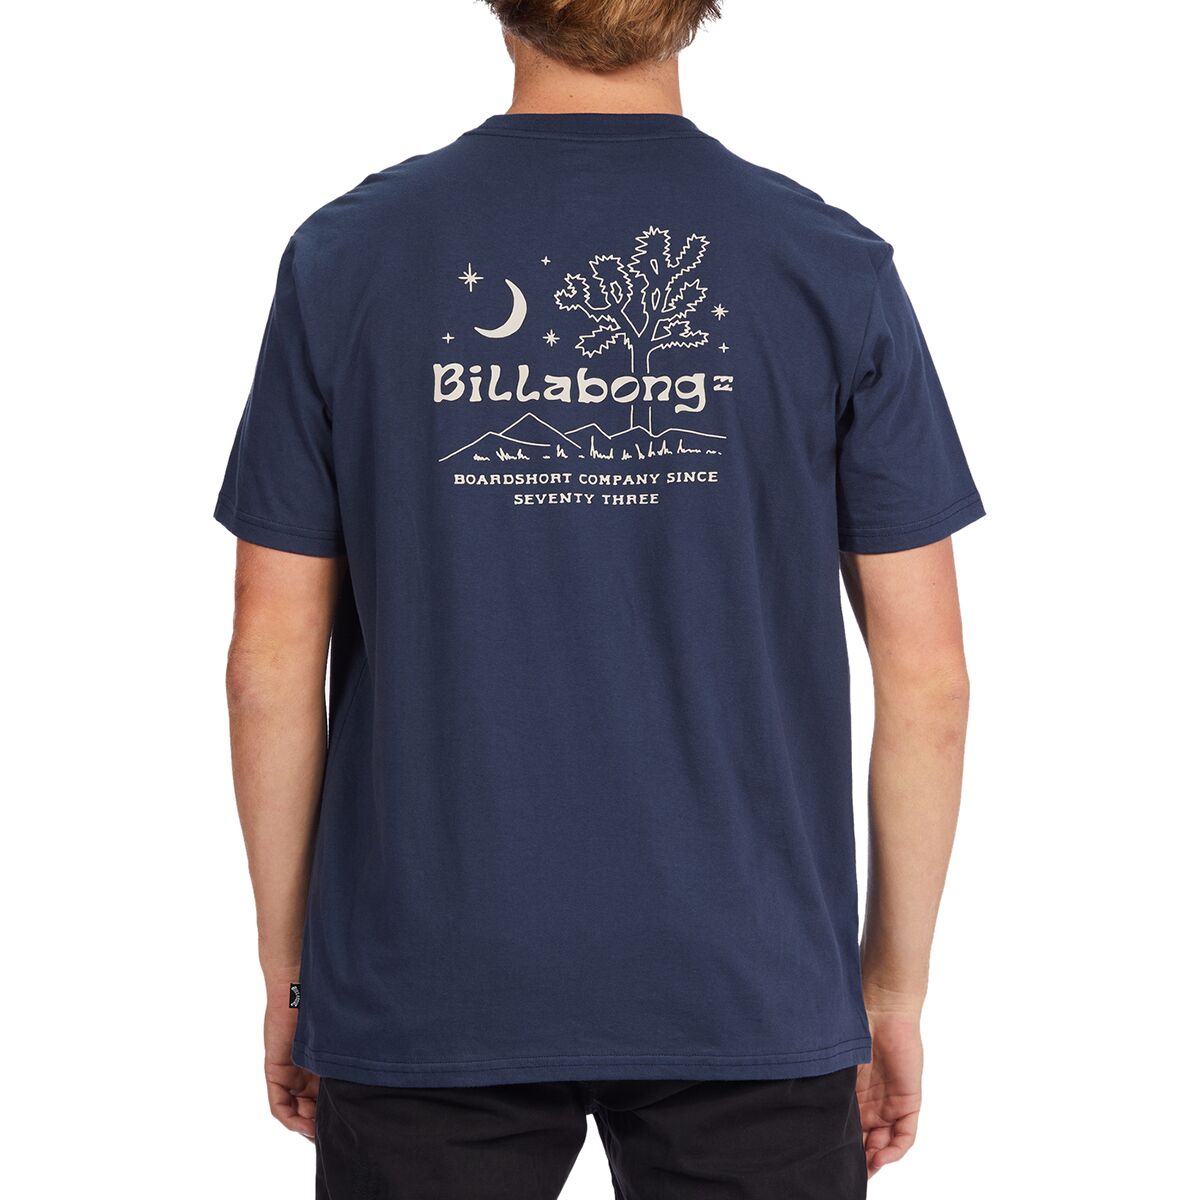 Billabong Social Club Short-Sleeve T-Shirt - Men's